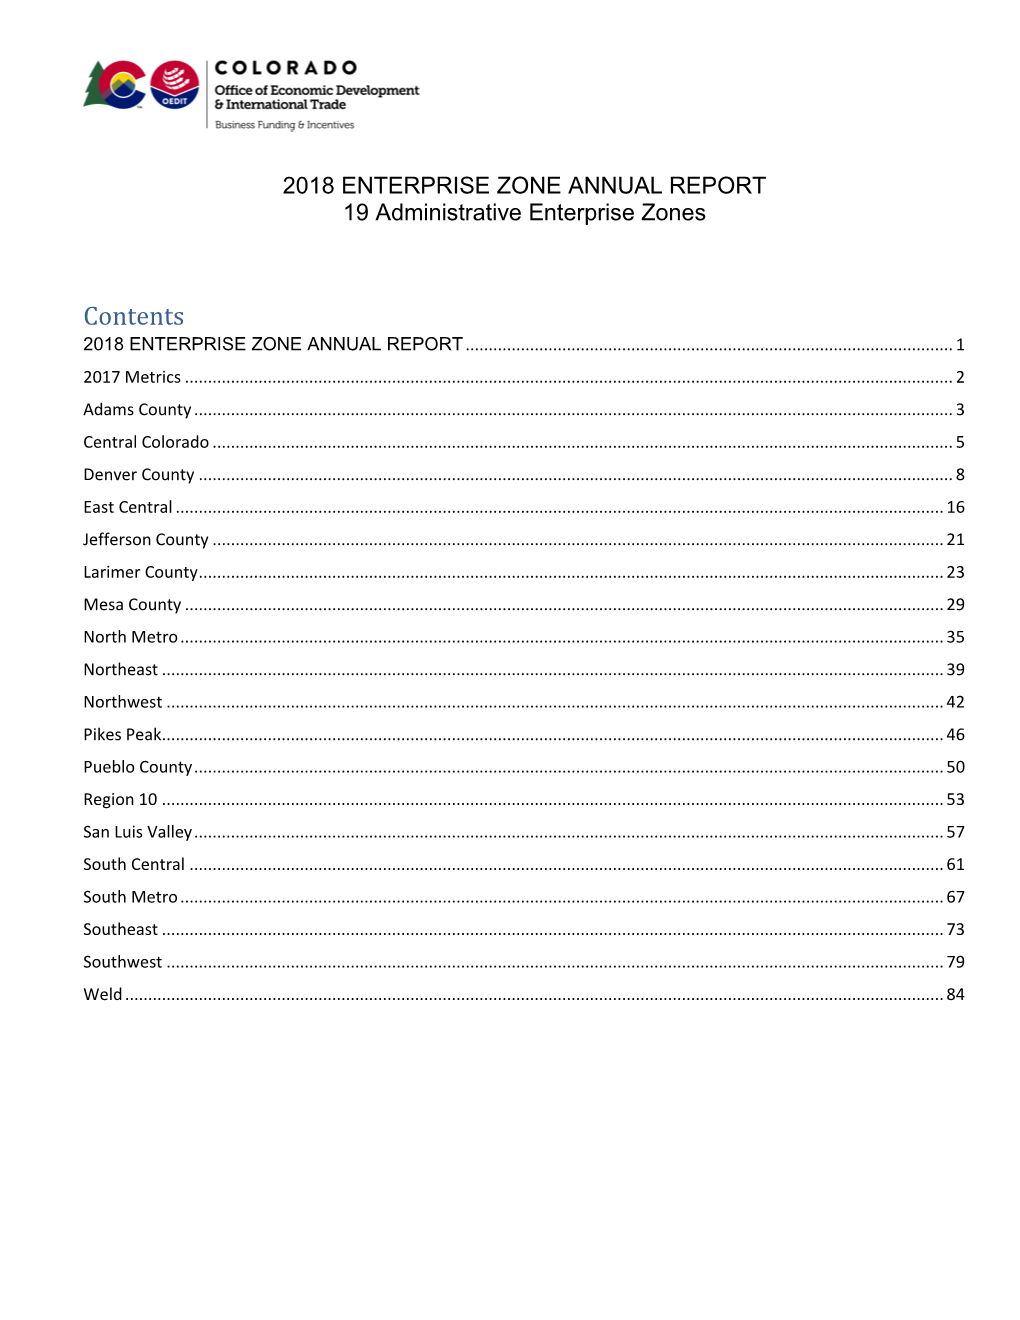 2018 Enterprise Zone Local Administrator Report